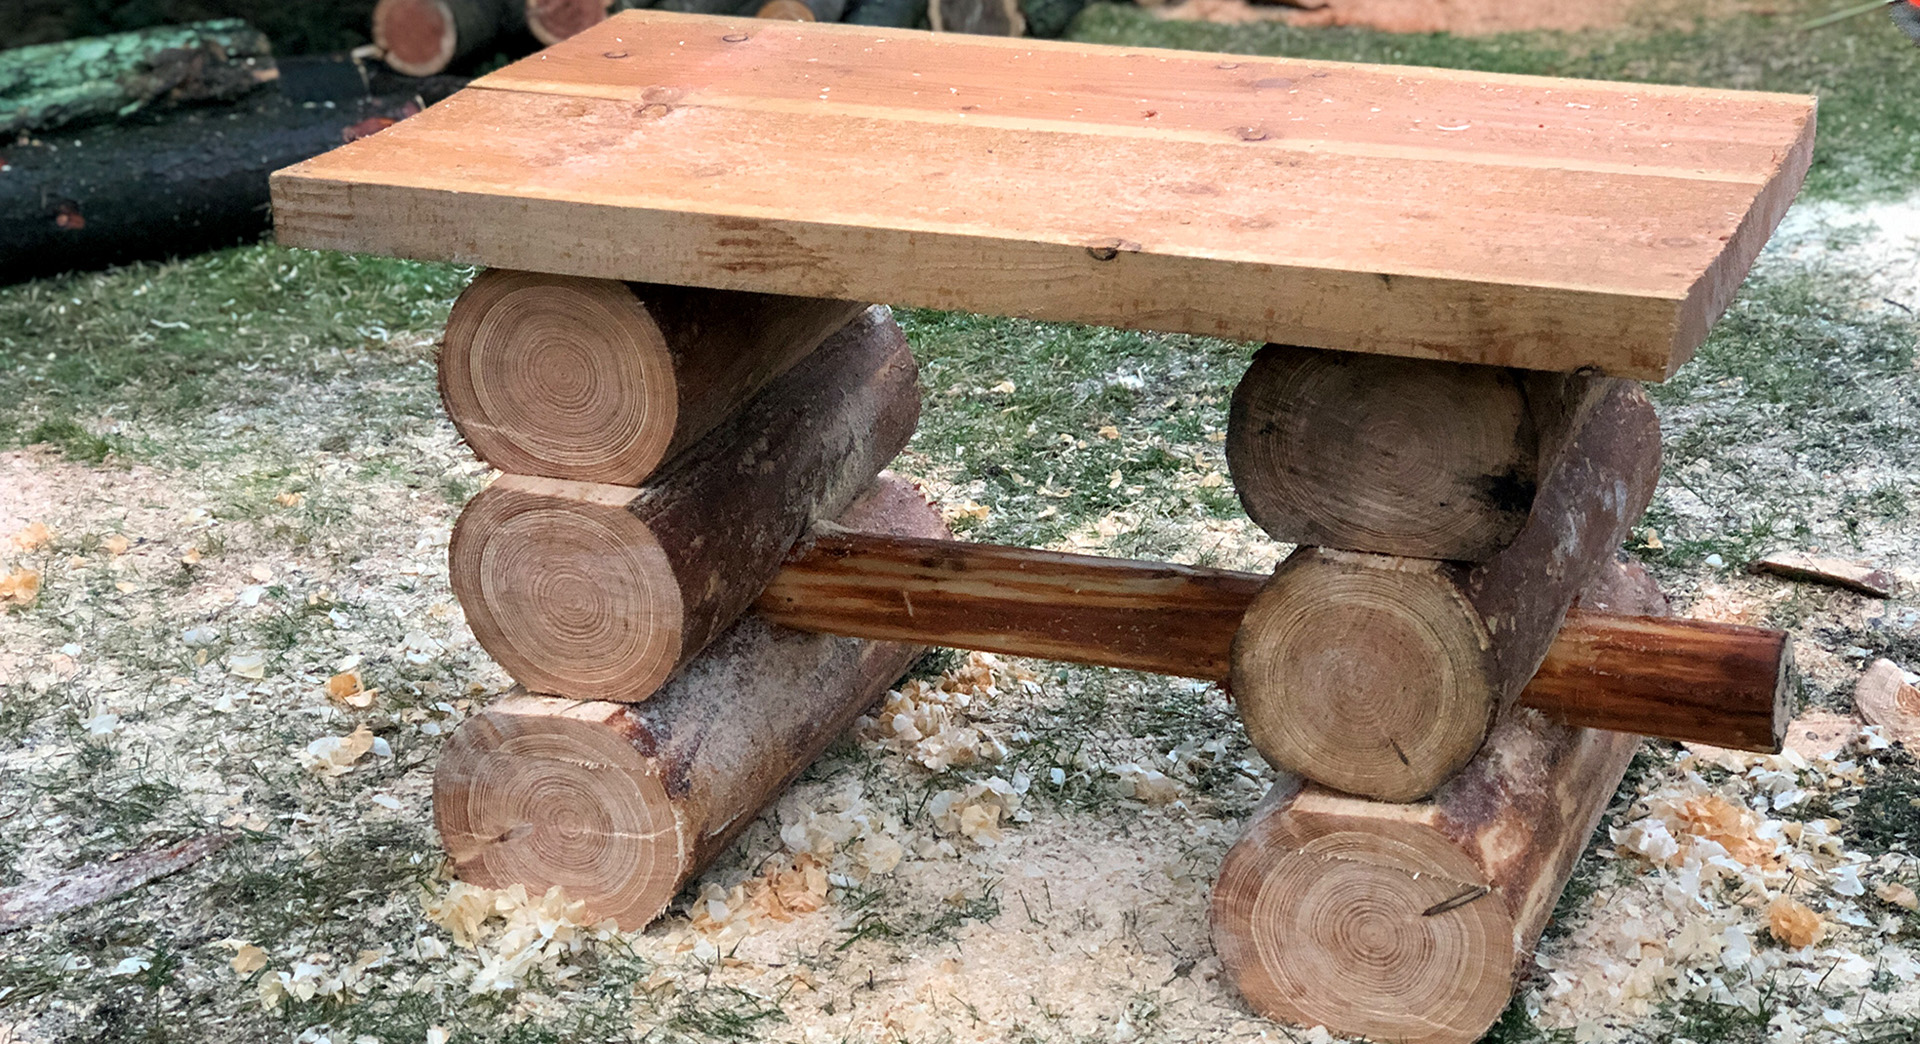 Uma mesa de bricolage para espaços verdes em madeira já acabada, num relvado, rodeada de serradura